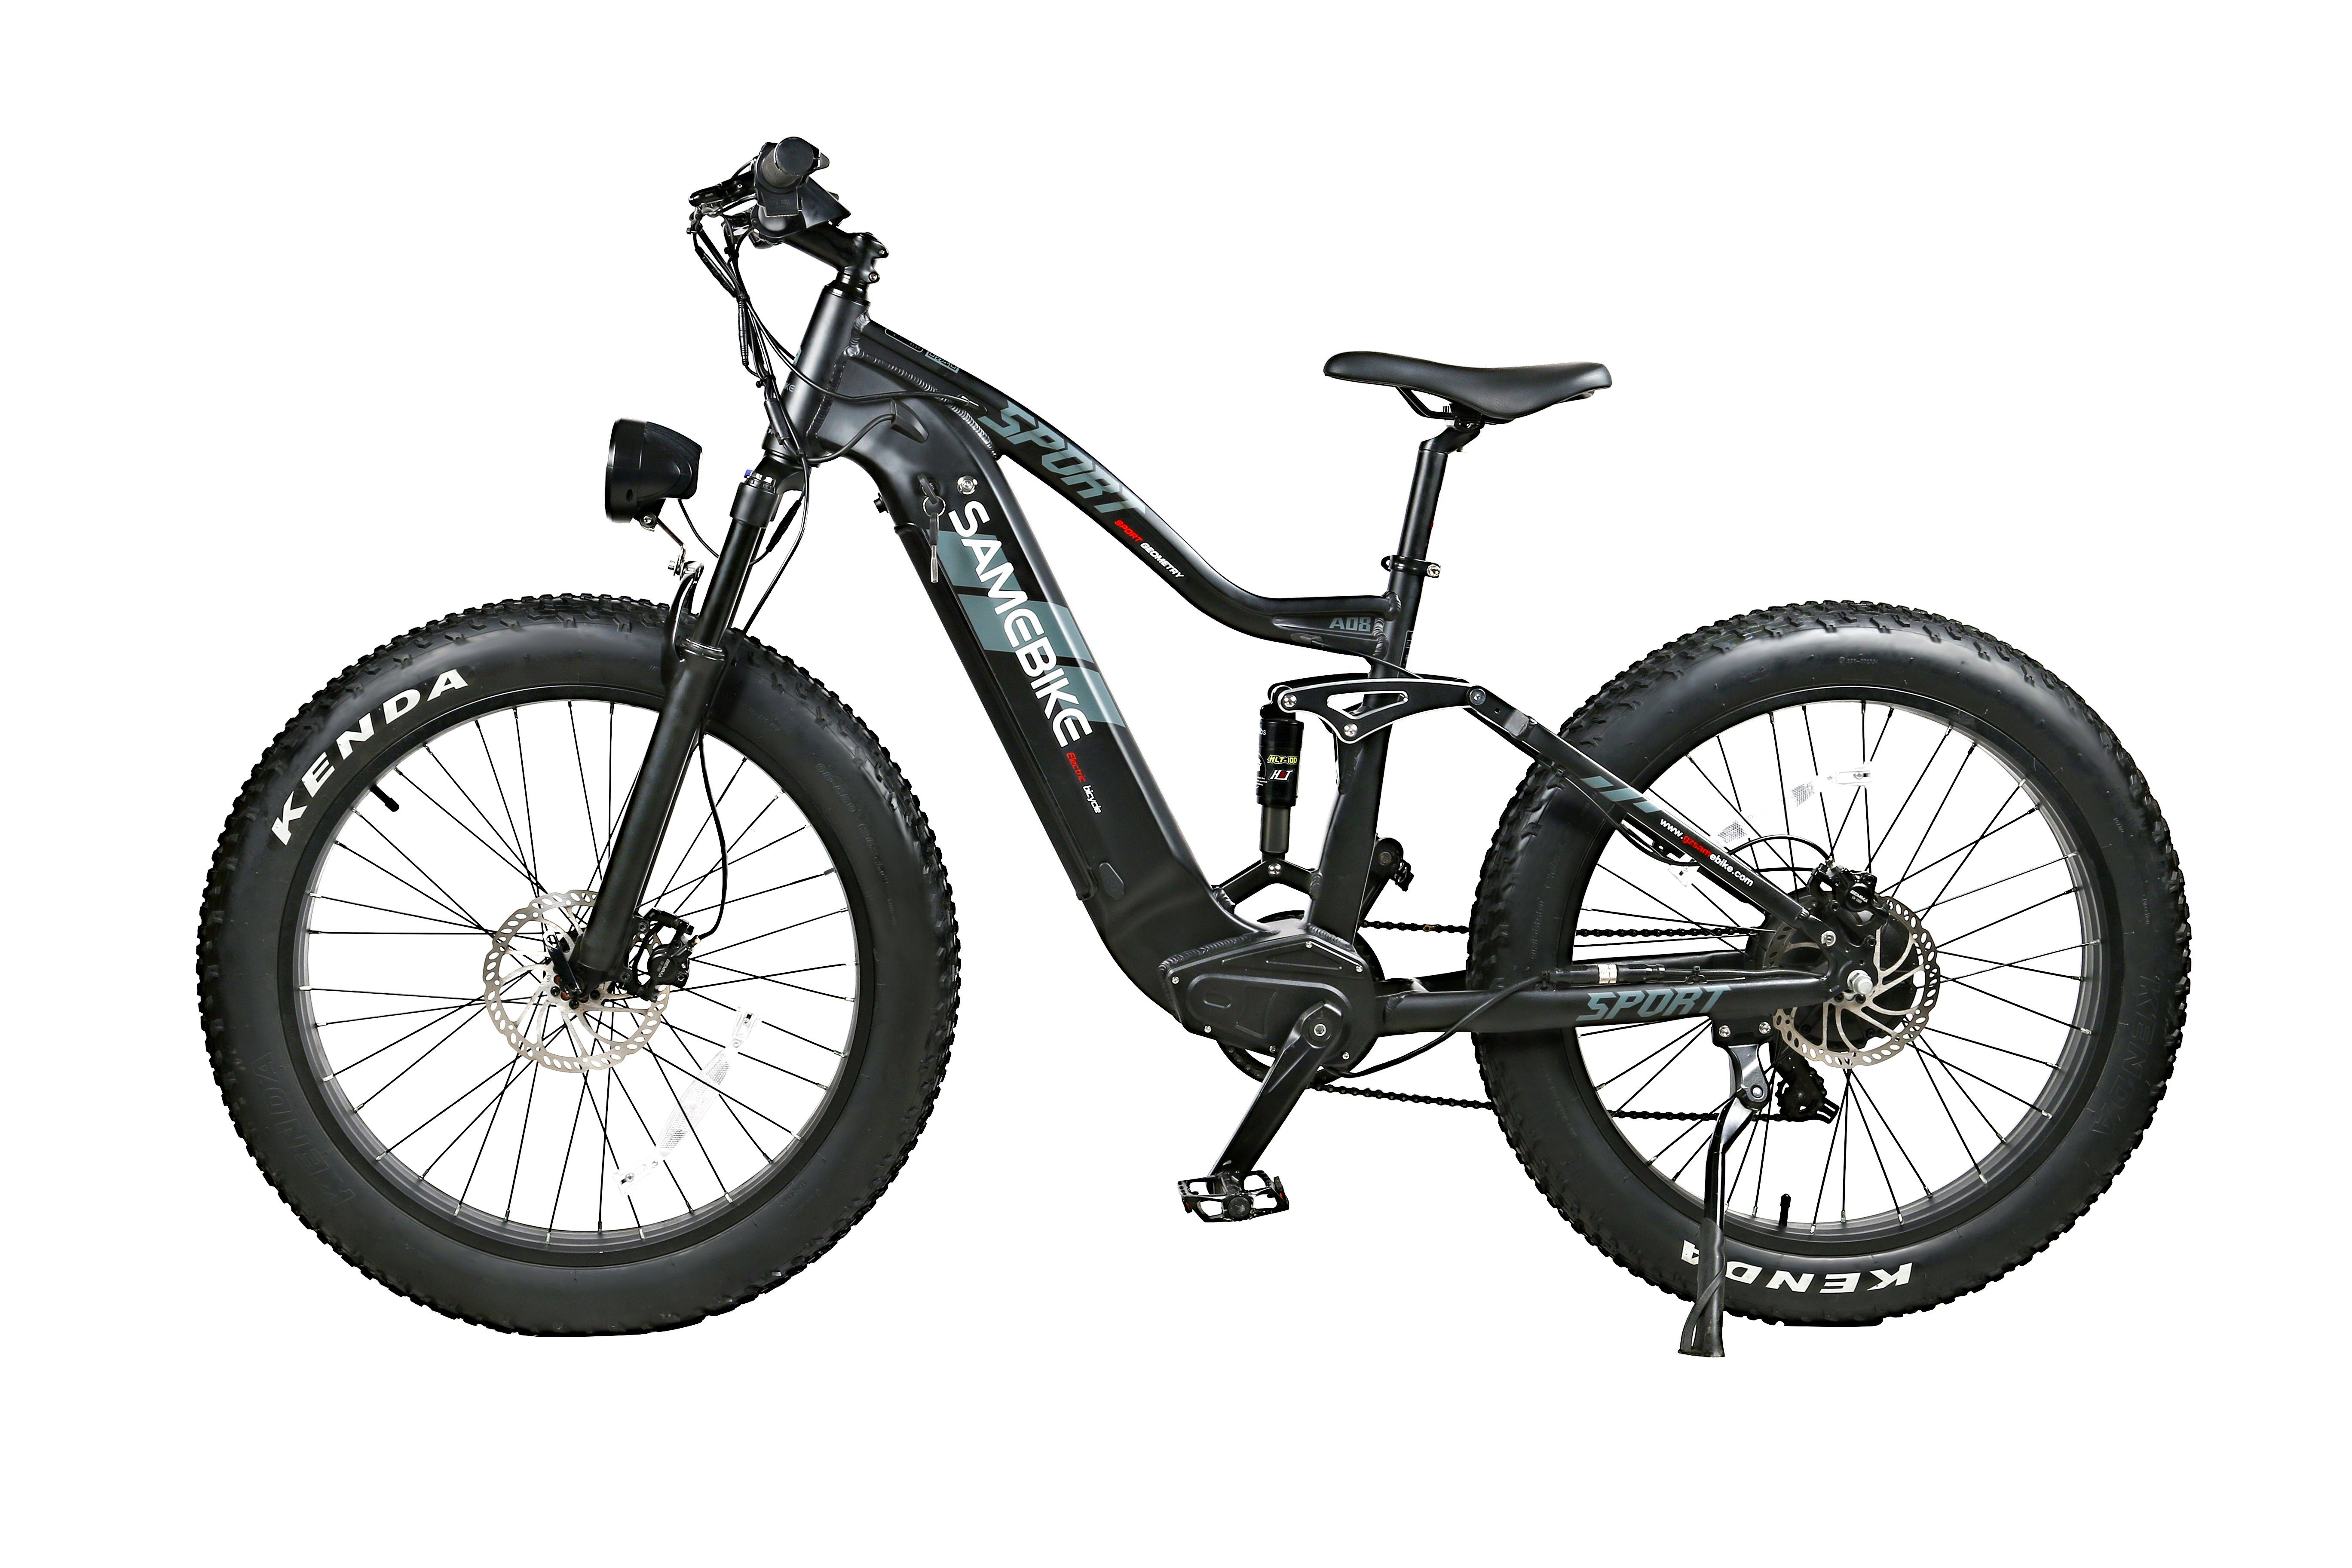 SAMEBIKE E-Bike RSA08 750W 26 Zoll Bafang Motor Fatbike E-Mountainbike 25km/h 17Ah Schwarz